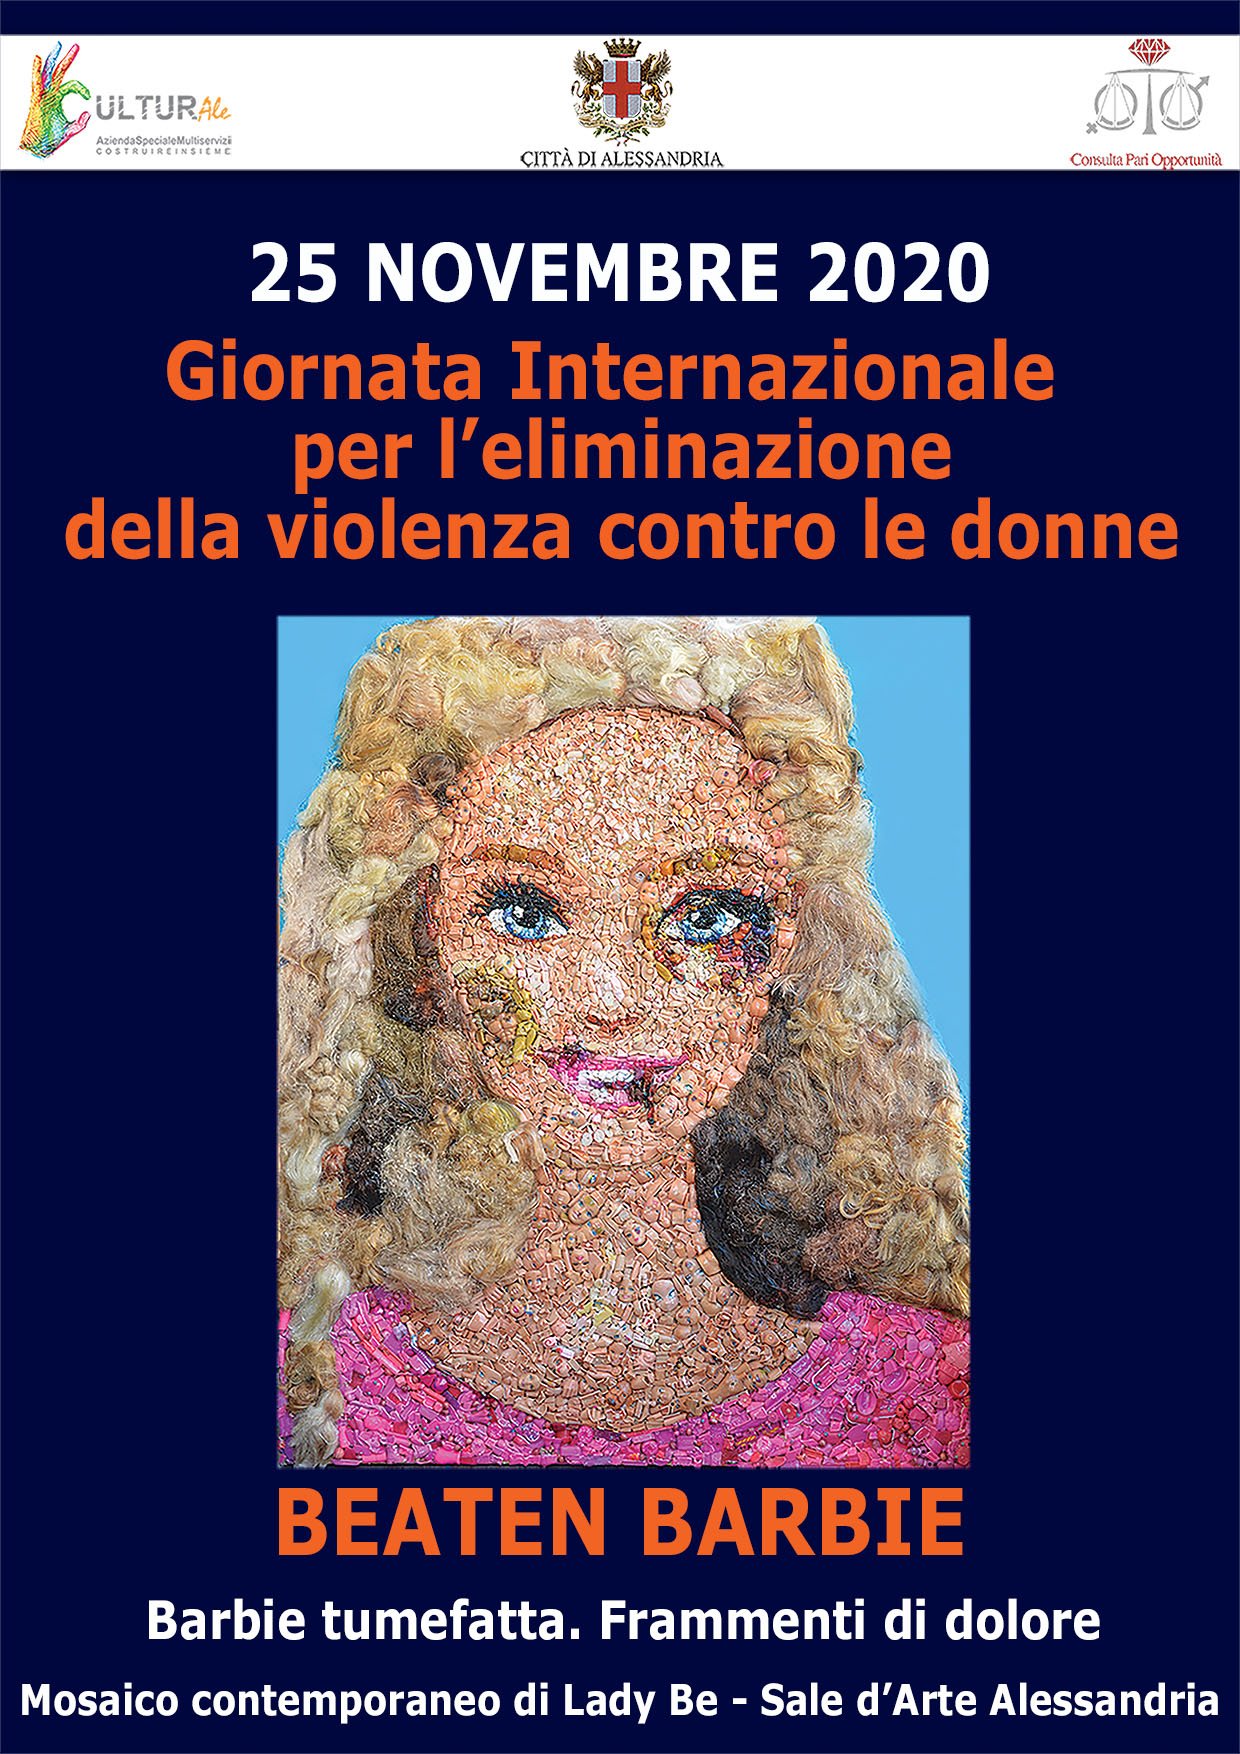 Una Barbie tumefatta per stigmatizzare la violenza sulle donne: l’arte di Lady Be ad Alessandria